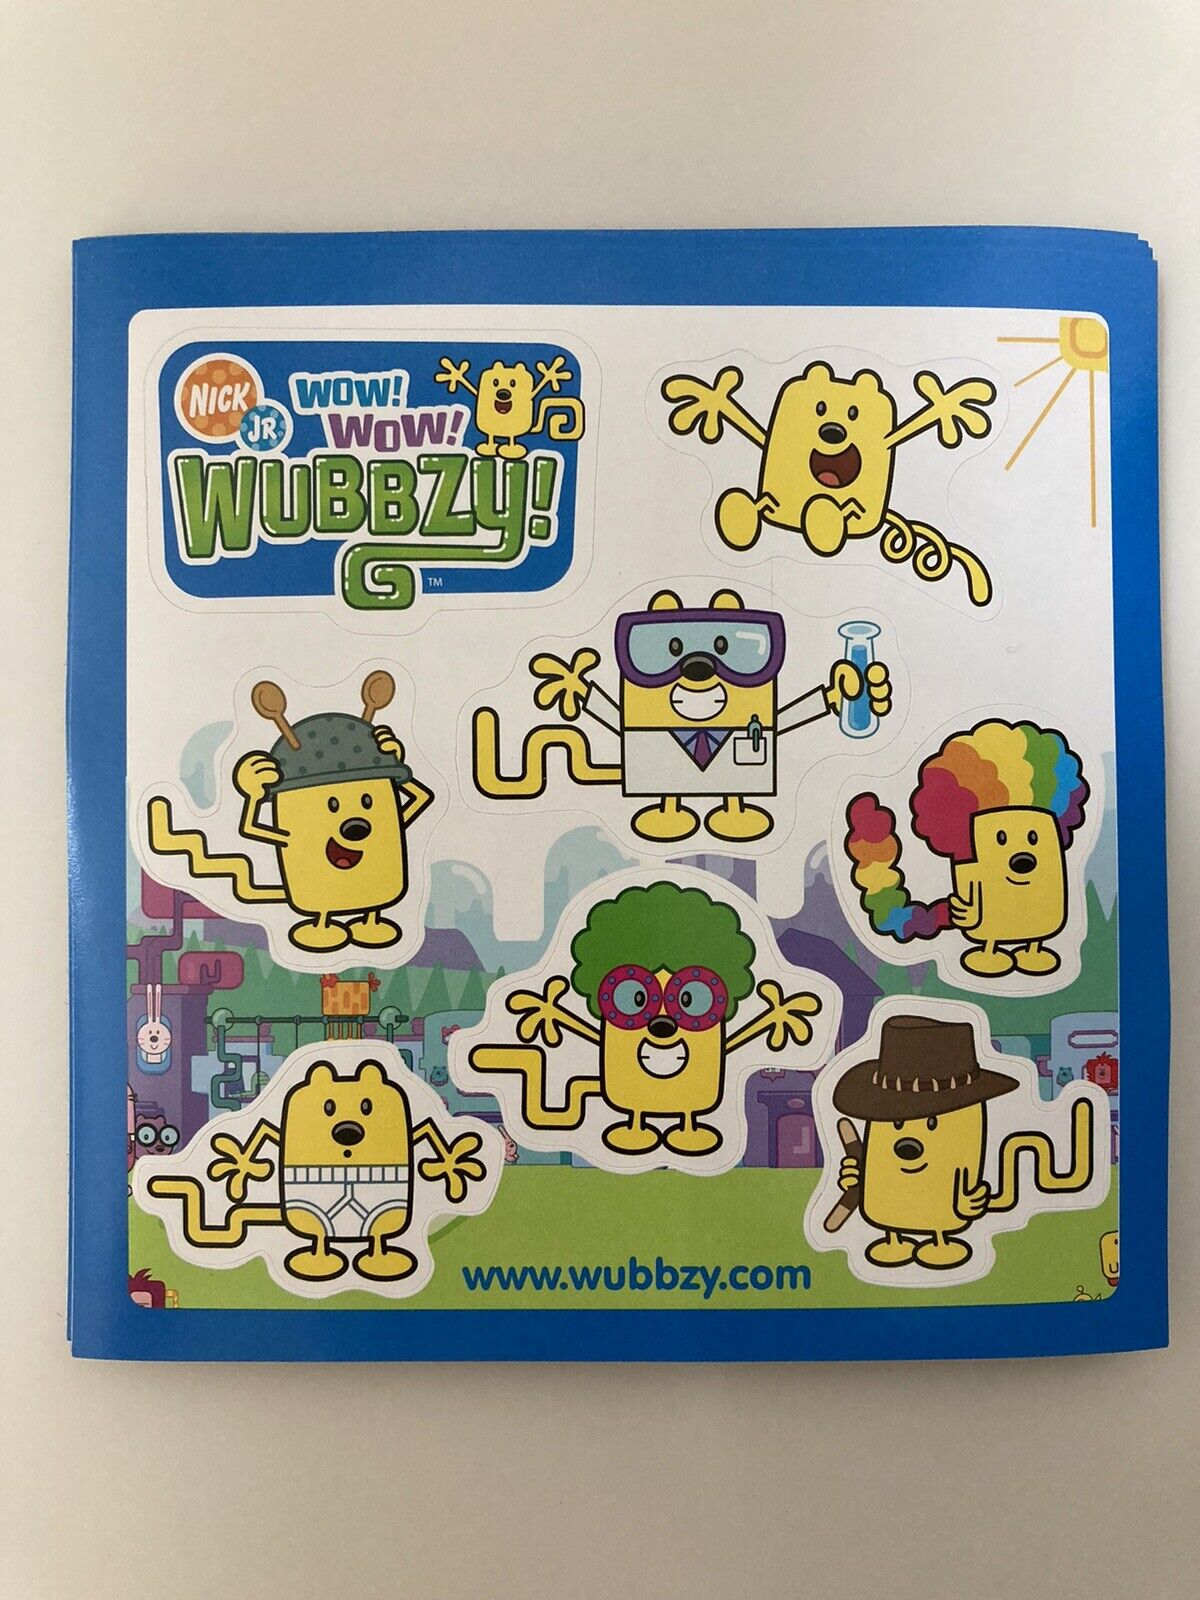 Wow! Wow! Wubbzy! Sticker Sheet Lot of 10 Nick Jr 2008 DVD Release Promo  Ten  Bolder Media Inc. Wubbzy